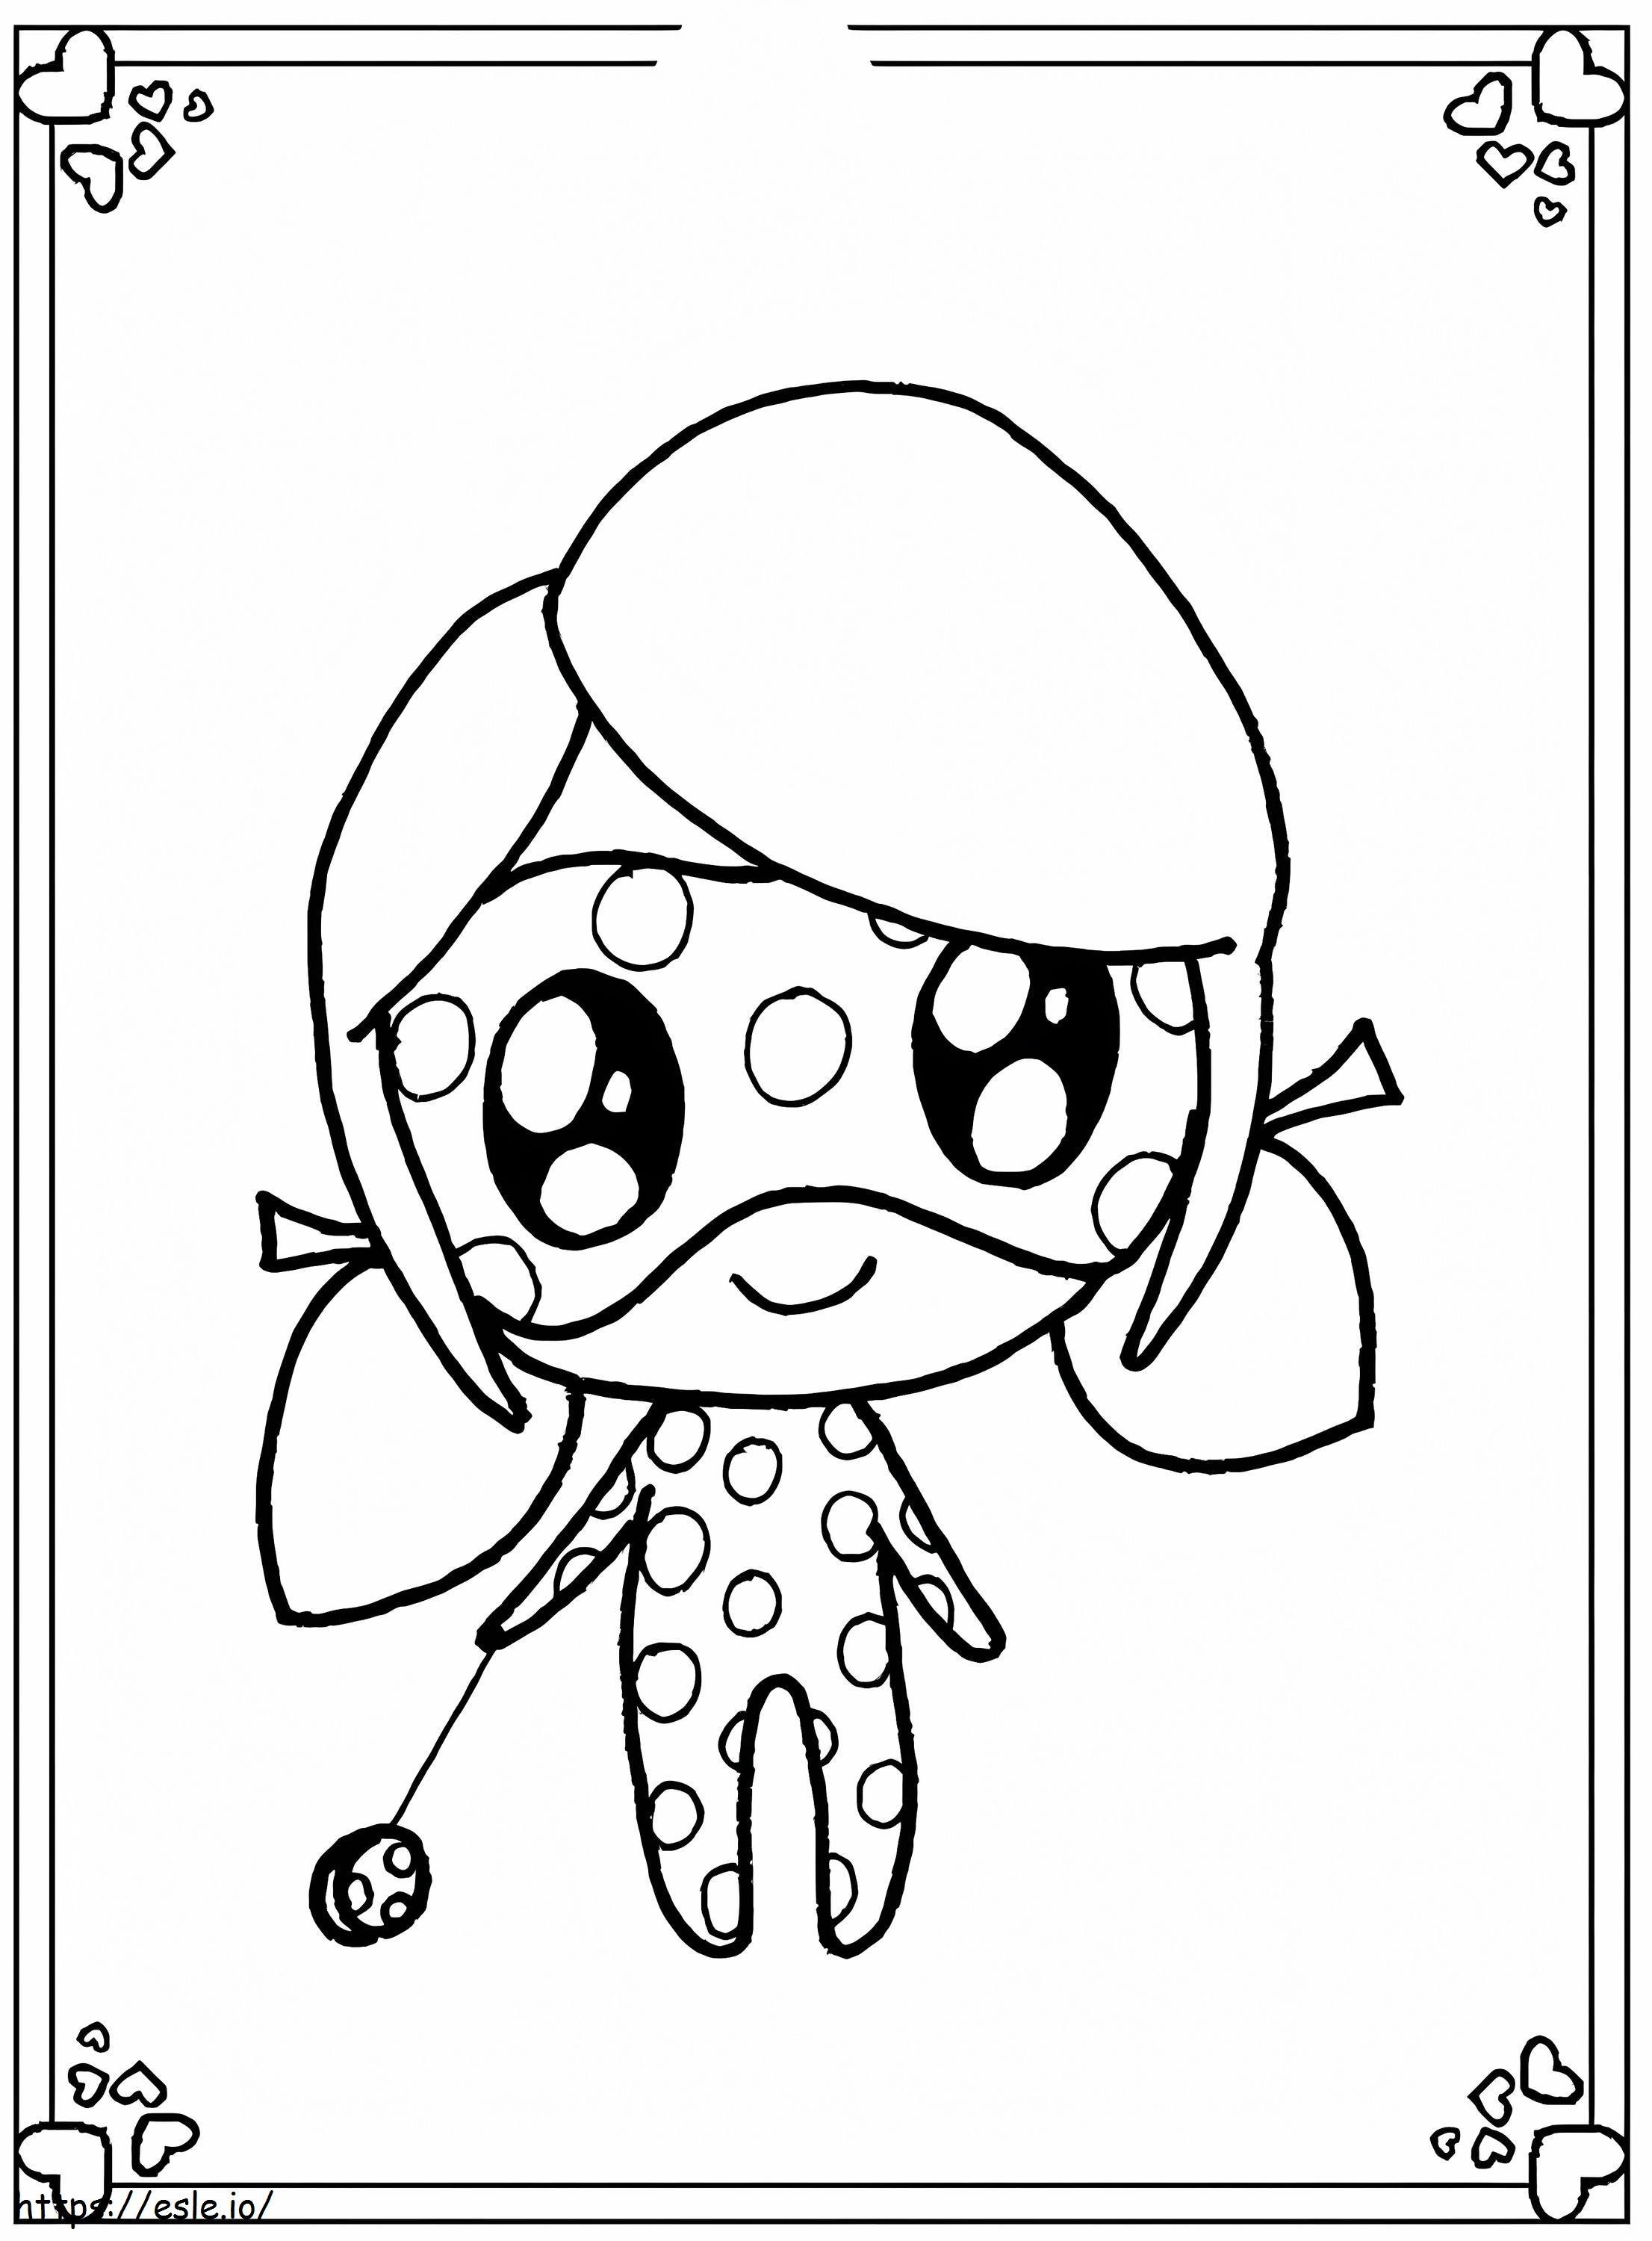 Chibi Ladybug Smiling coloring page